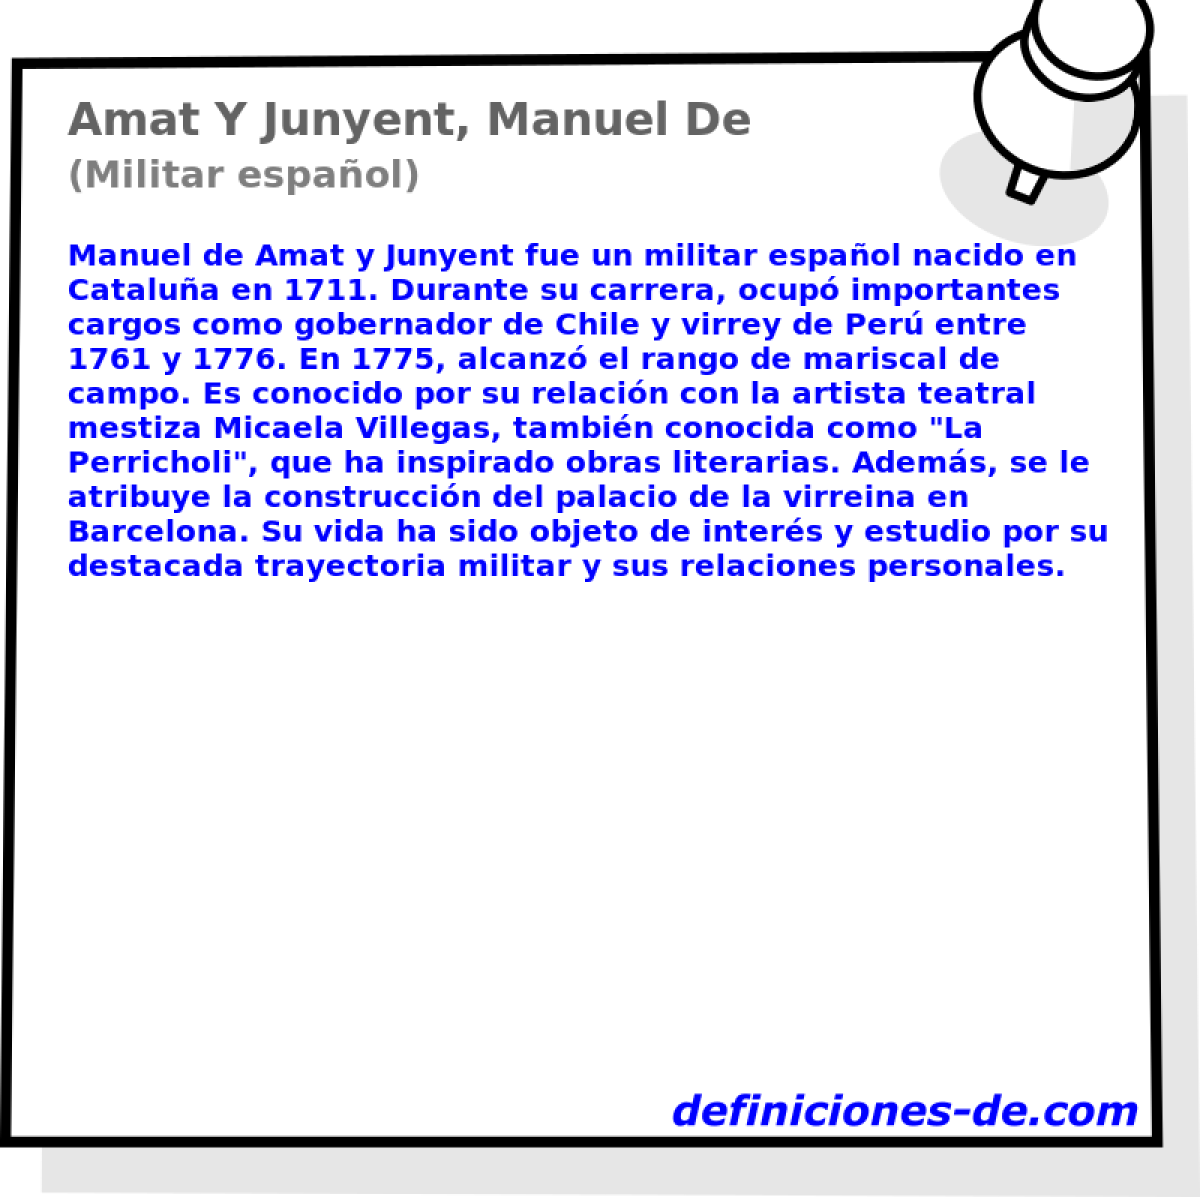 Amat Y Junyent, Manuel De (Militar espaol)